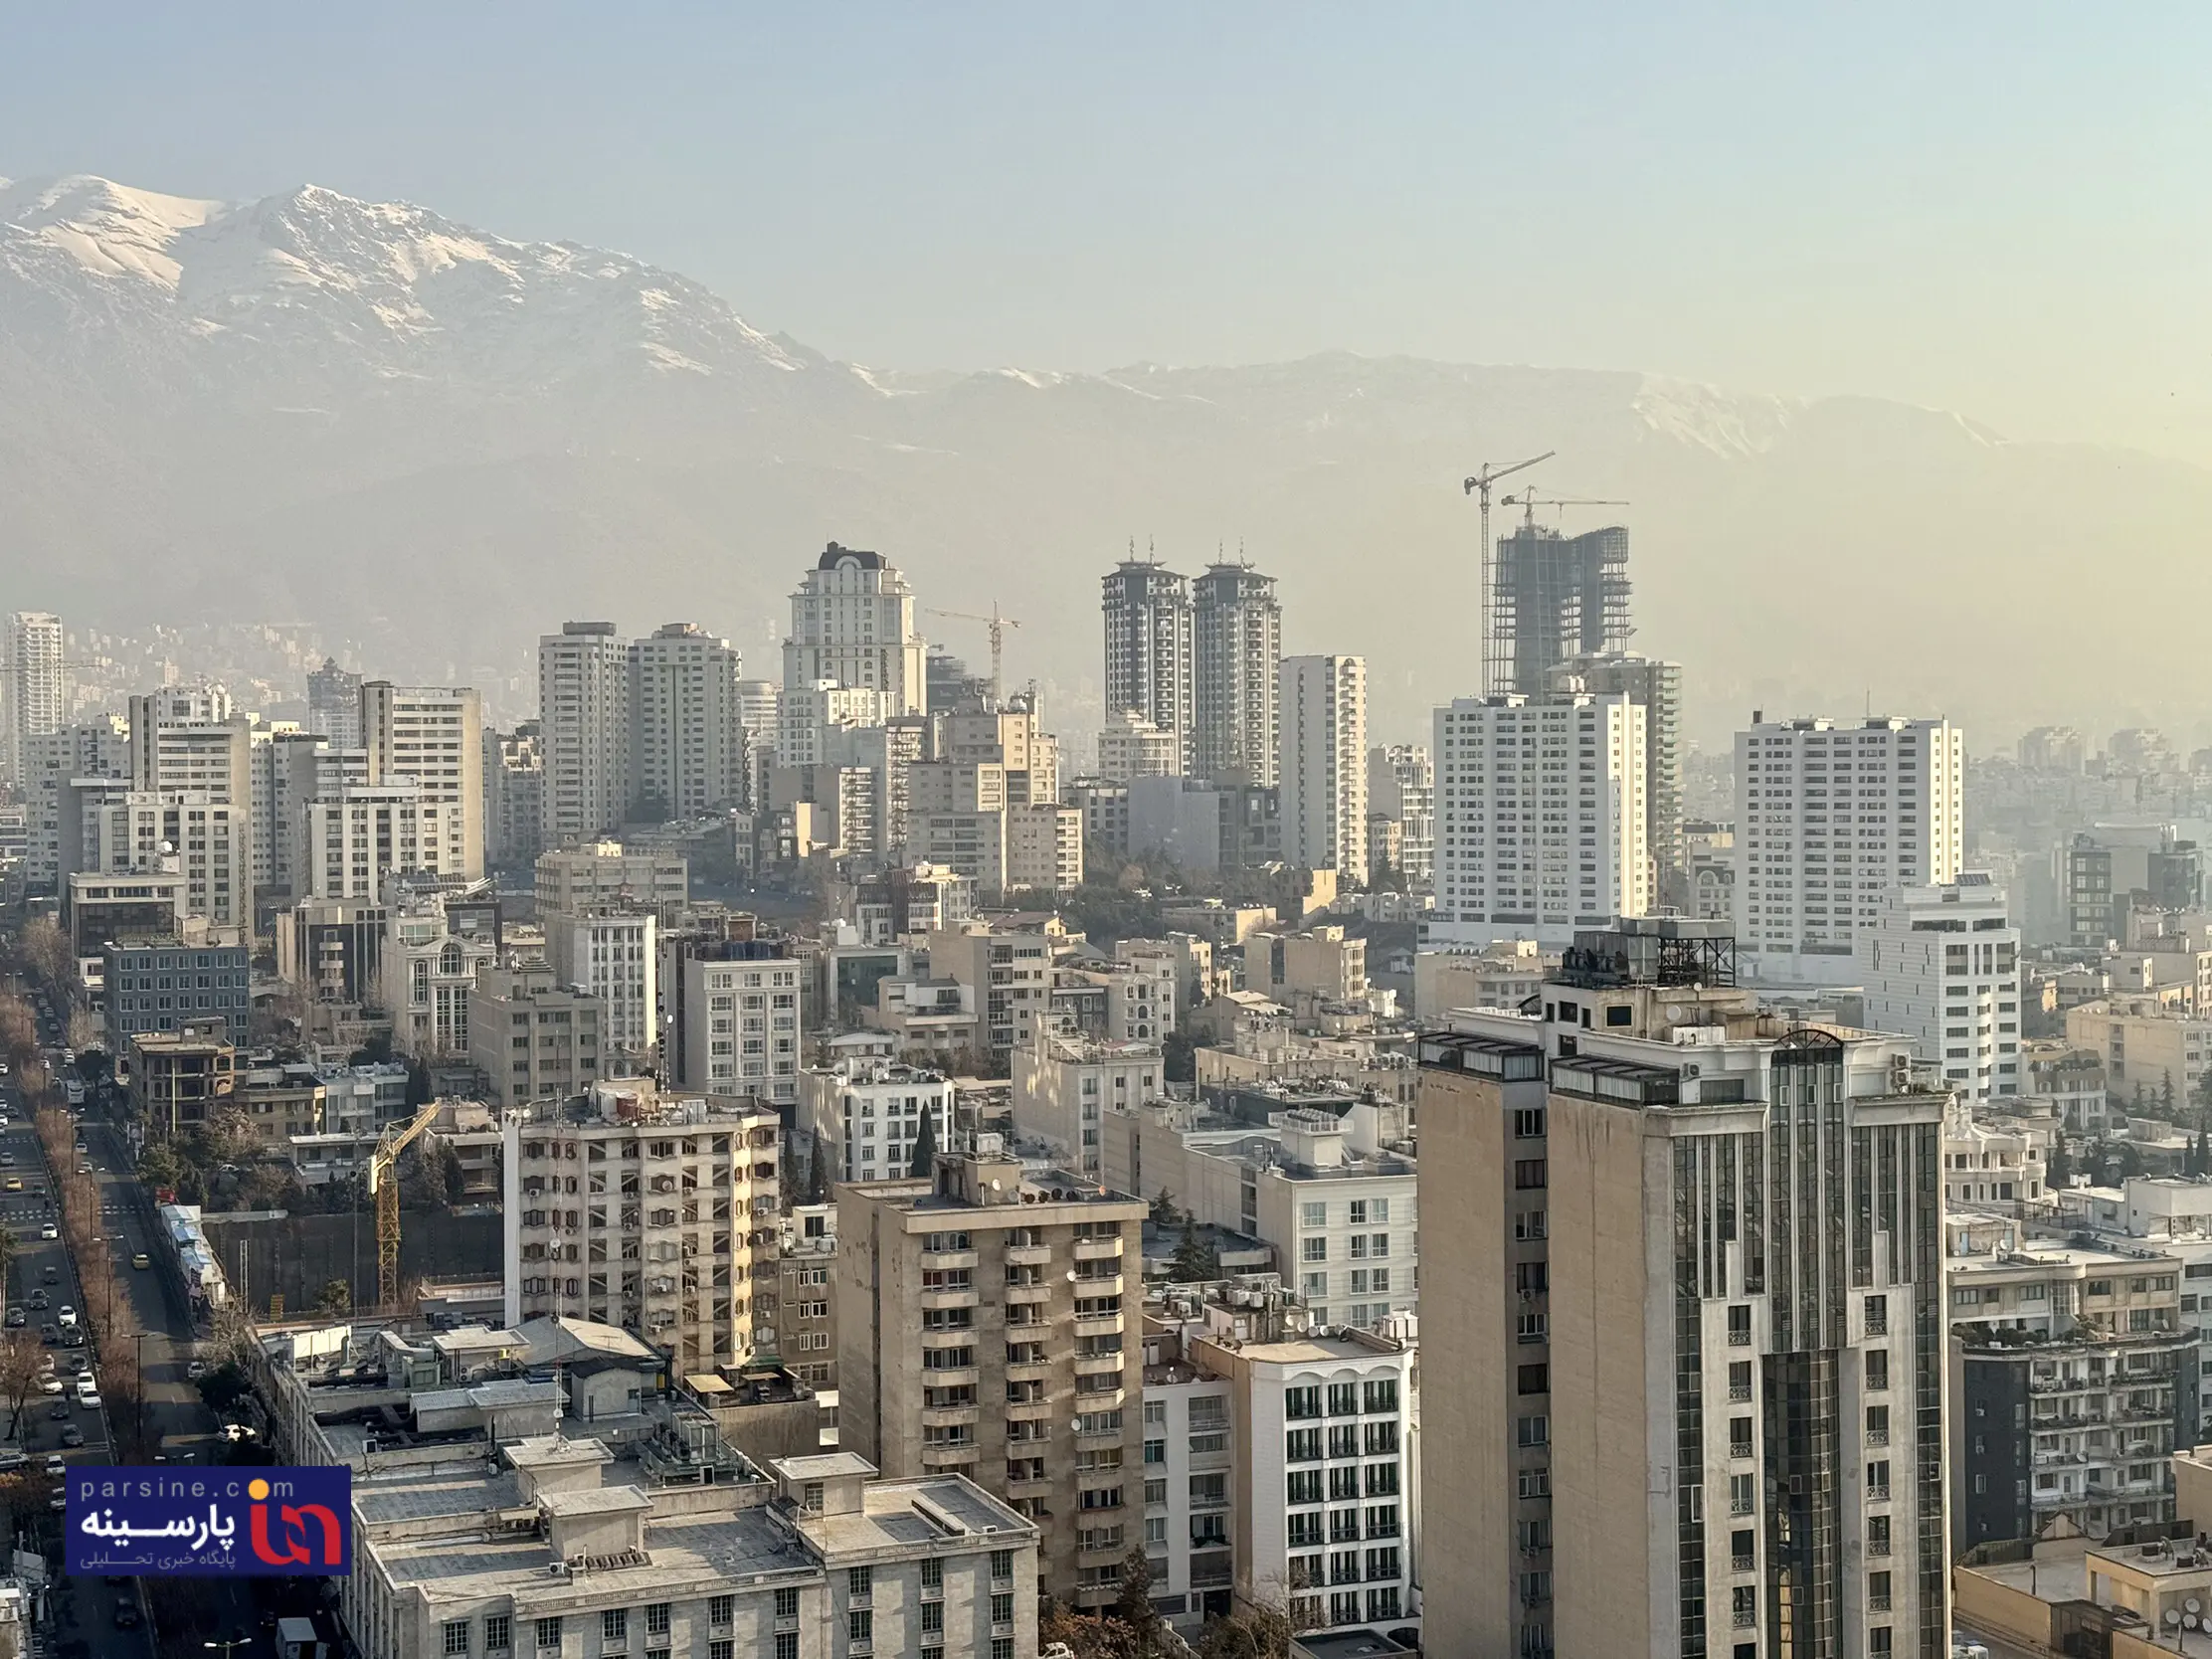 افزایش خیره کننده قیمت مسکن در تهران نسبت به سال گذشته/متوسط قیمت به متری 81 میلون تومان رسید!